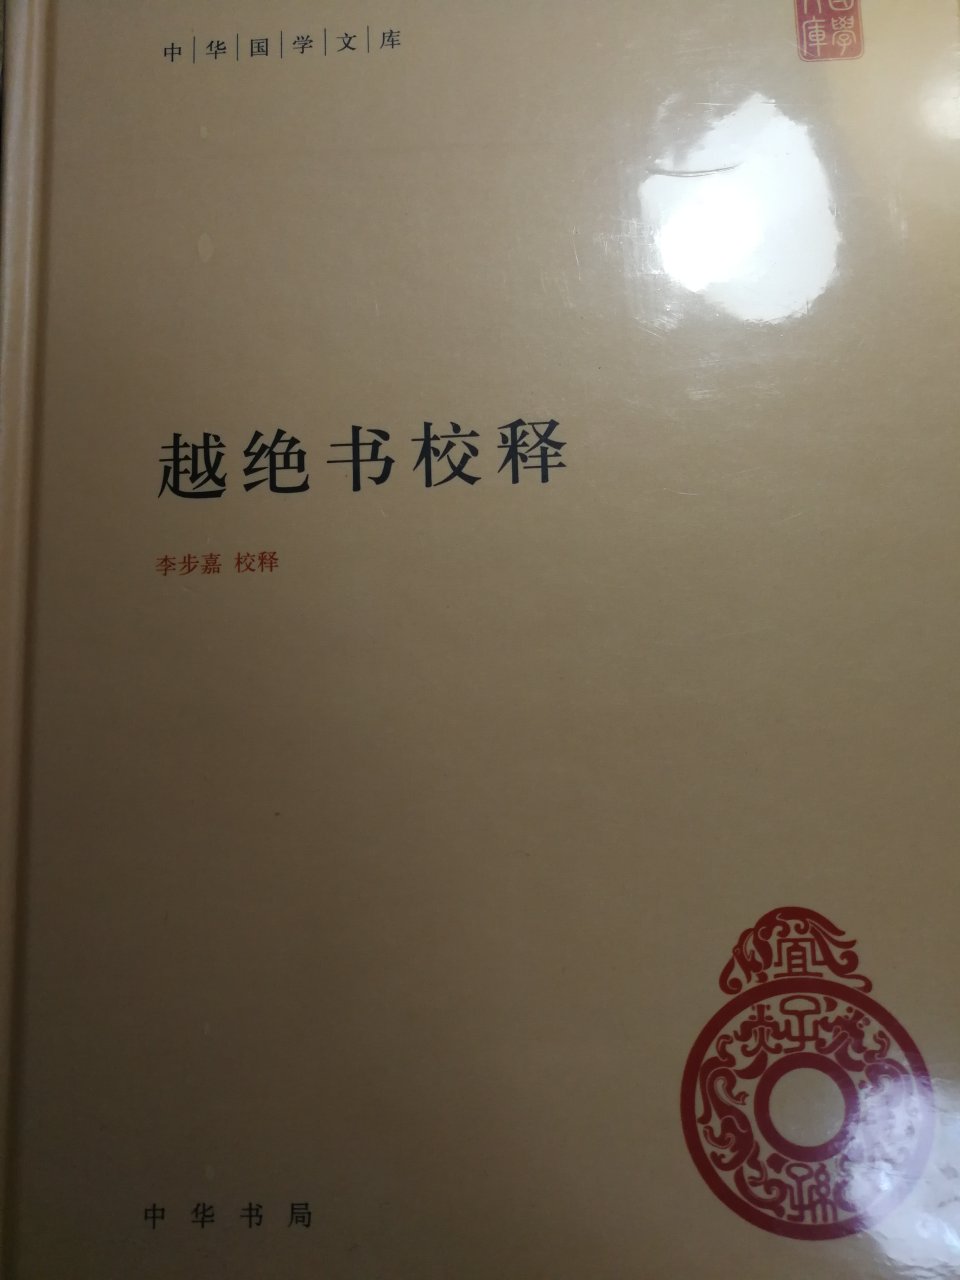 中华国学文库，差不多都收了，今年还有三种未出版。上一辑还有一种未出版。